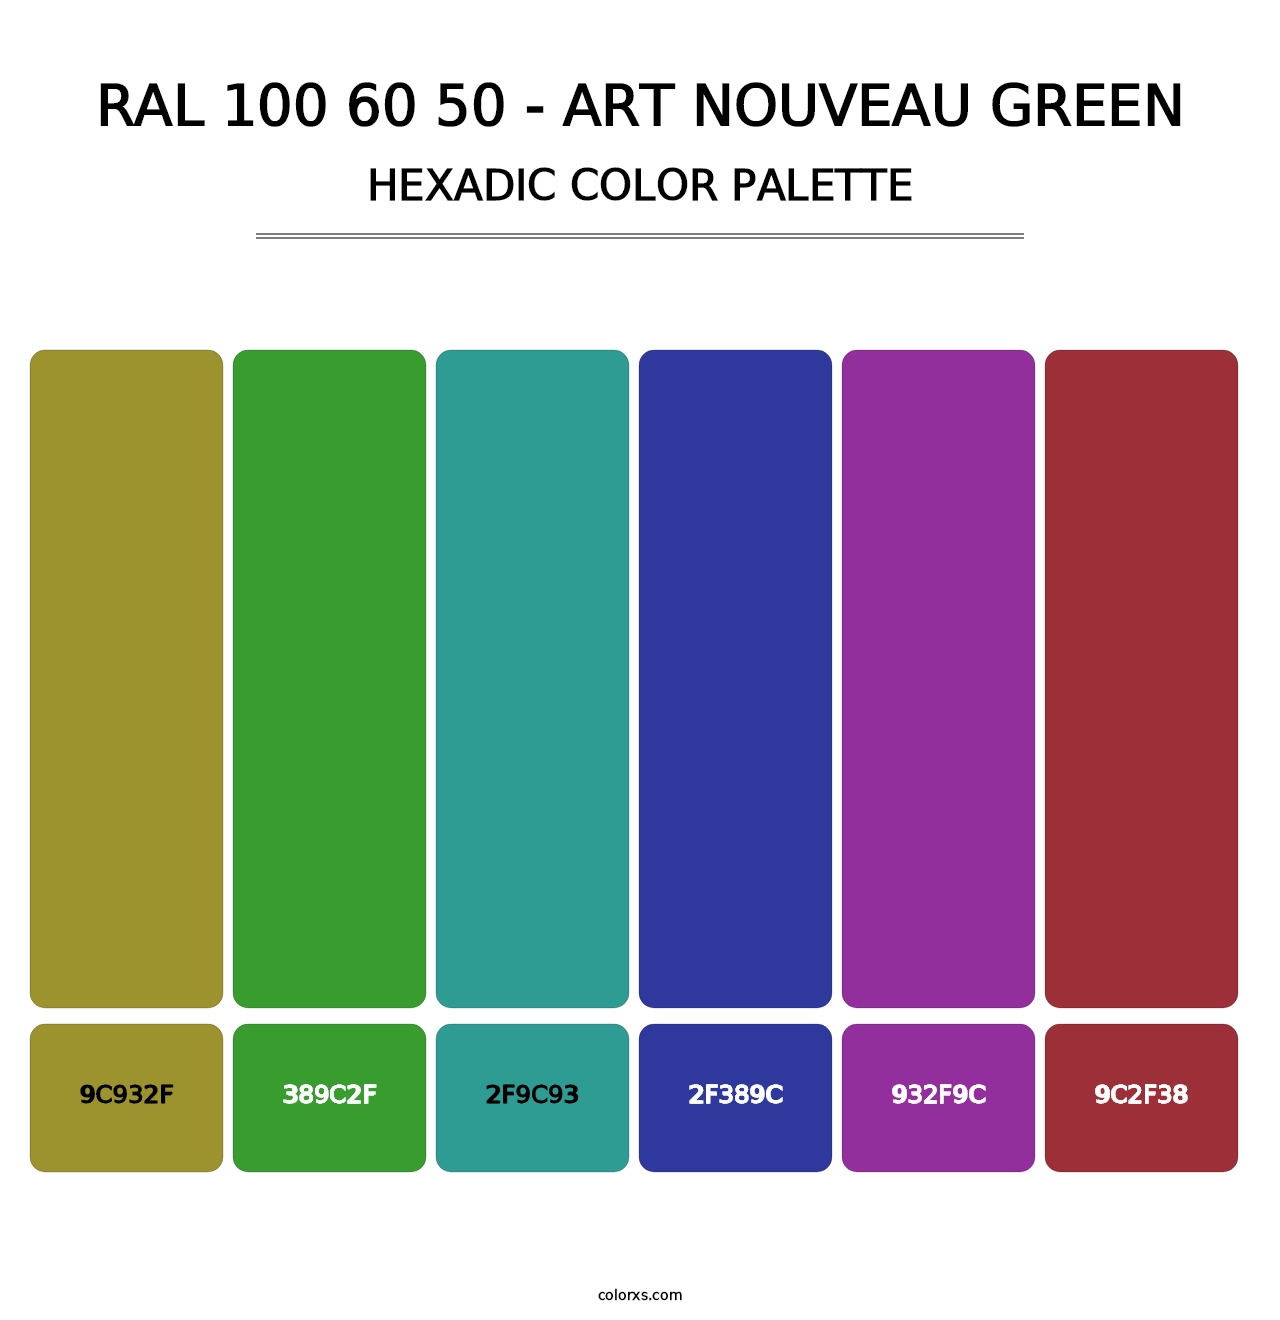 RAL 100 60 50 - Art Nouveau Green - Hexadic Color Palette